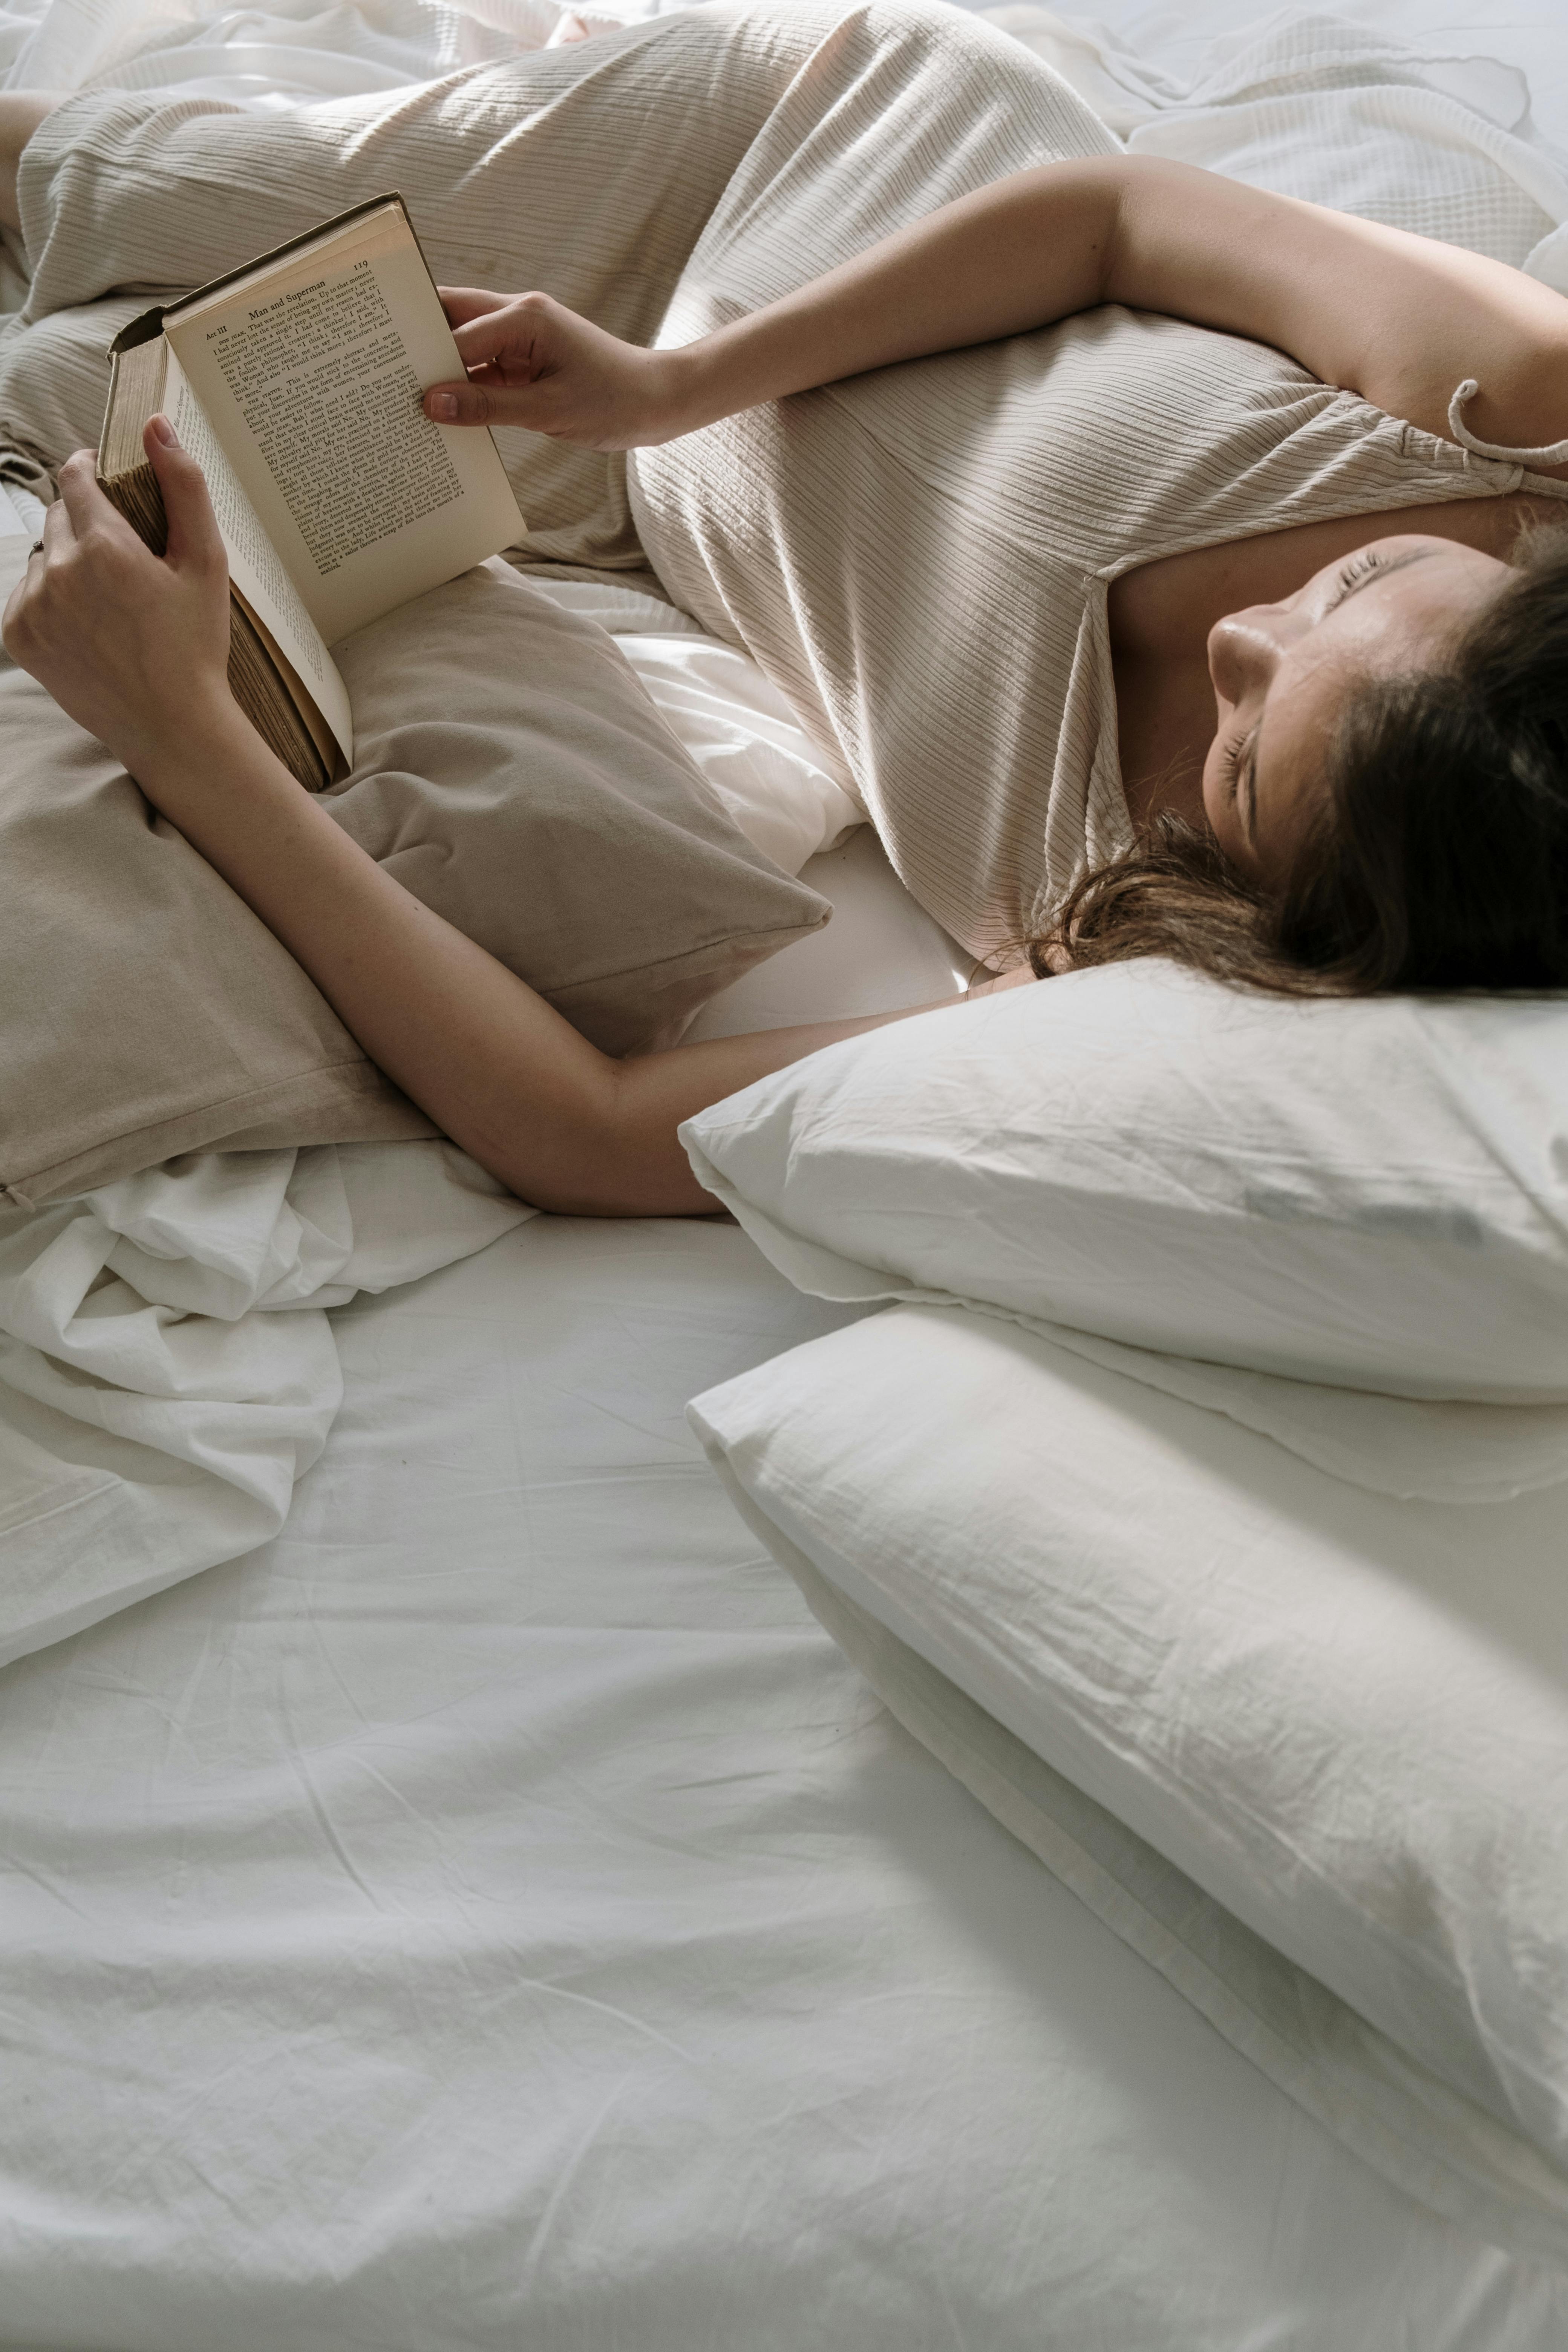 Una mujer tumbada en la cama leyendo un libro | Fuente: Pexels